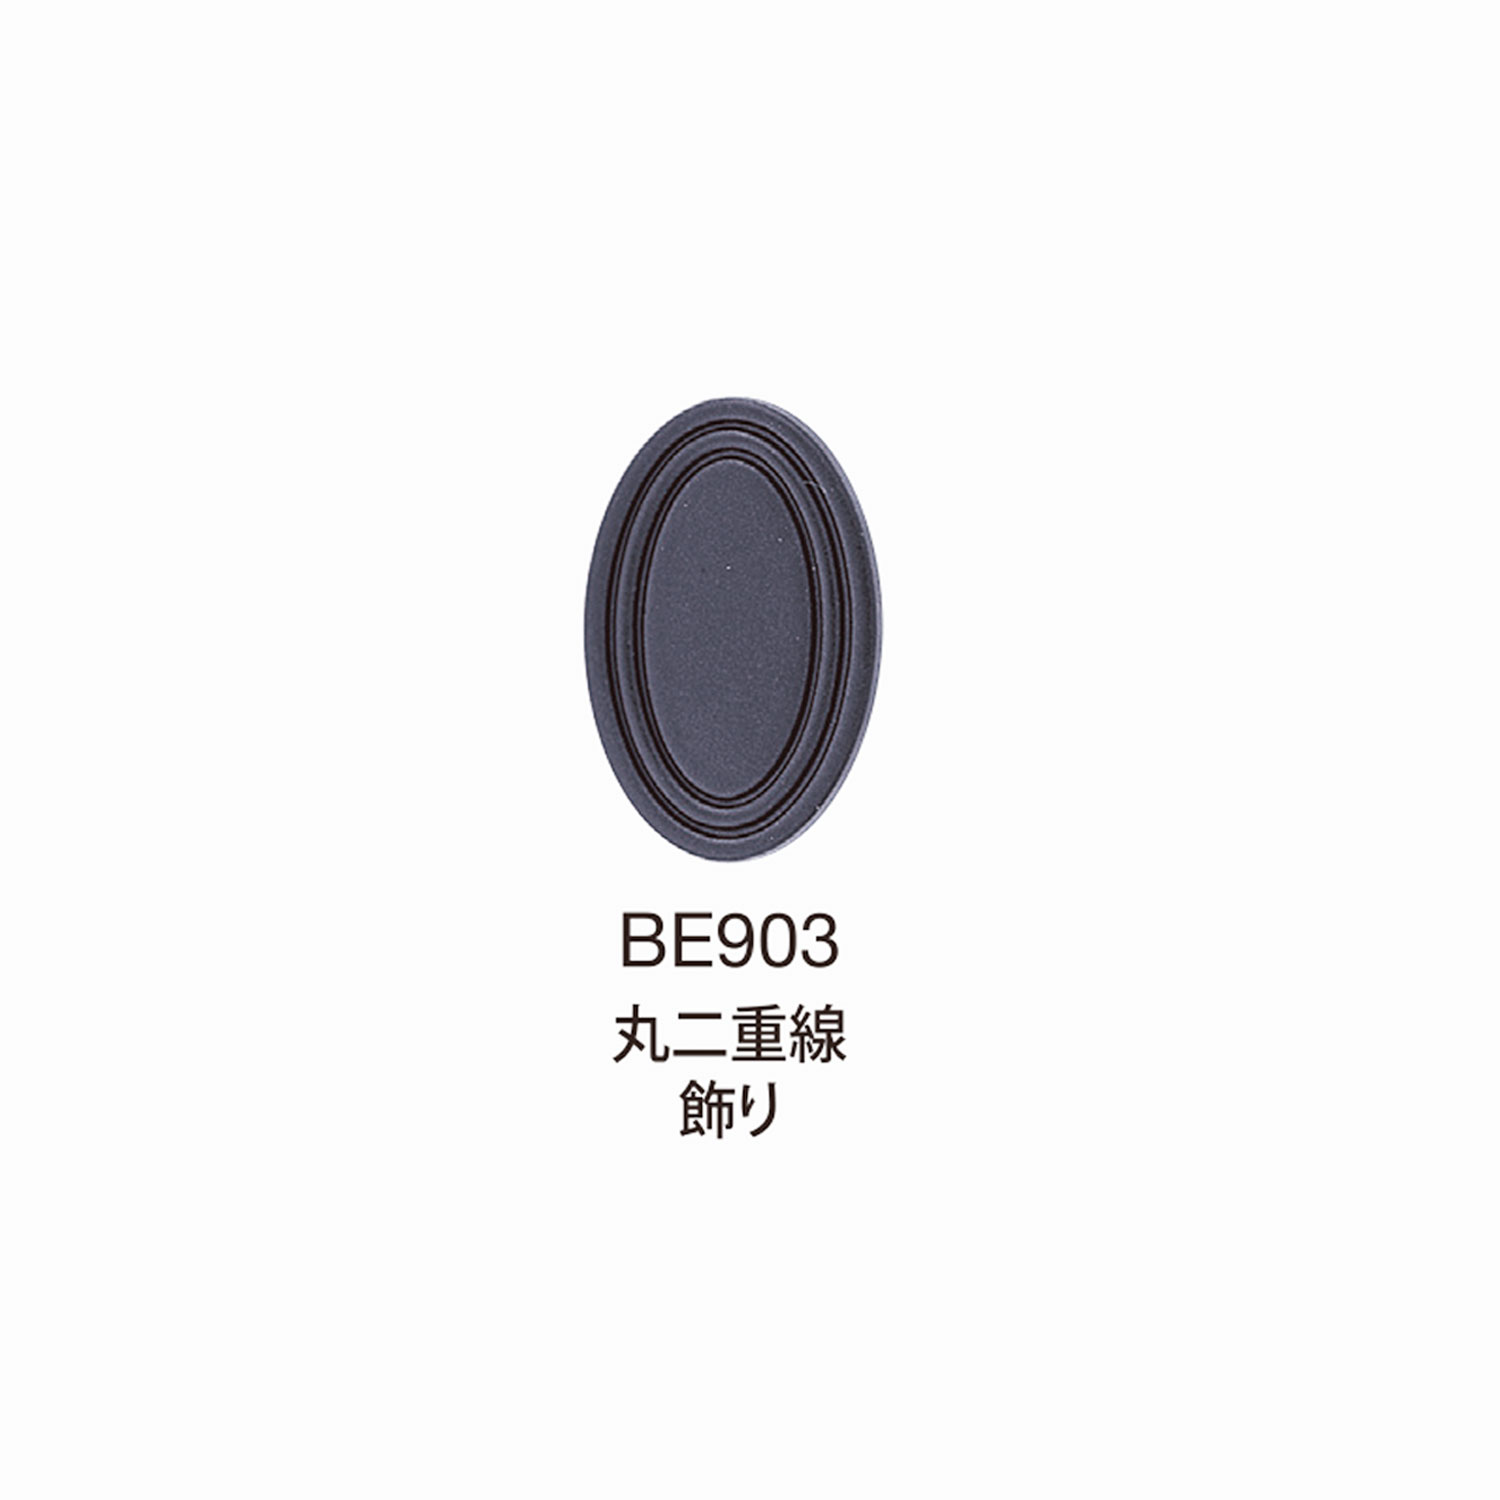 BE903 BEREX α Top Hardware Round Linha Dupla Decoração[Fivelas E Anel] Morito